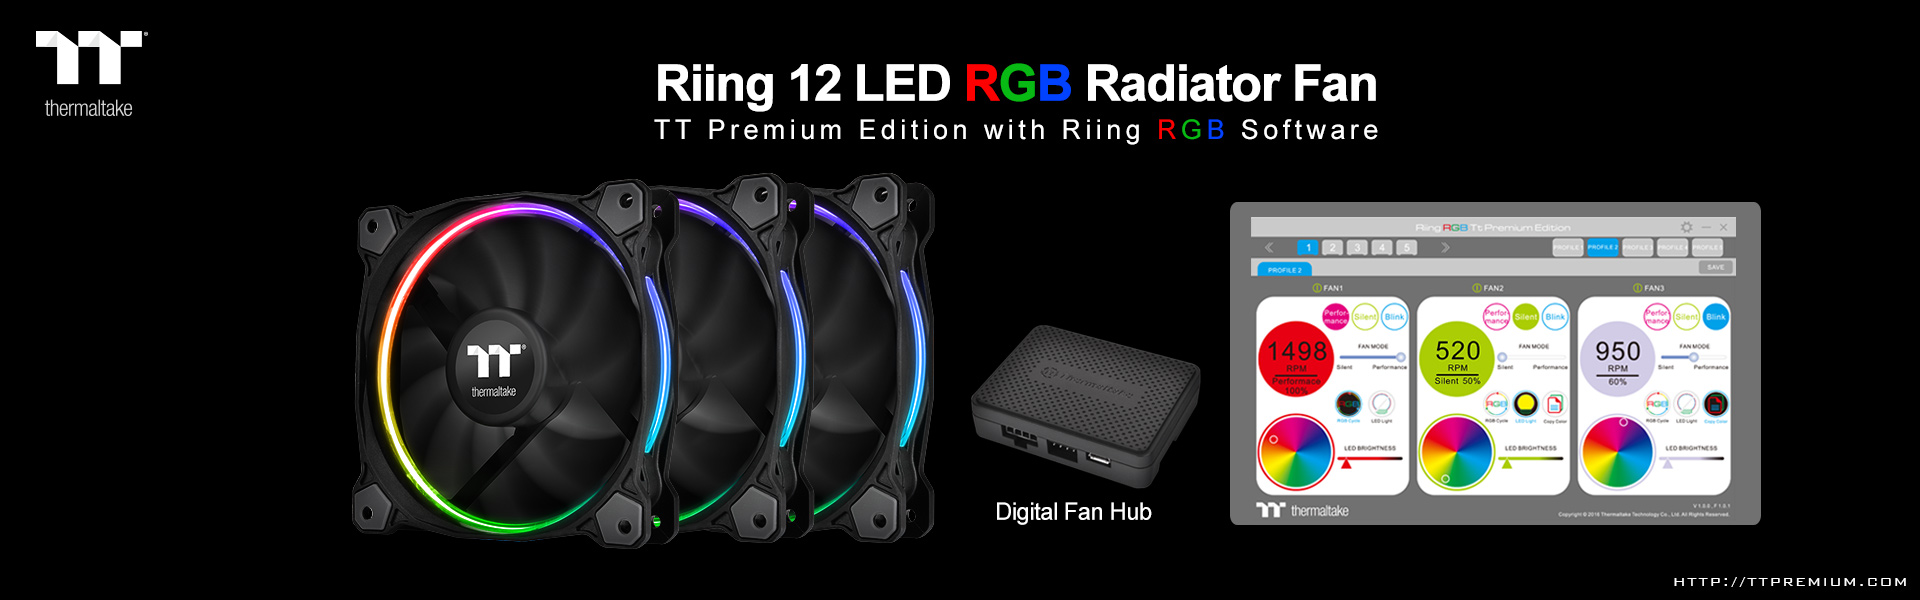 Thermaltake-Riing-LED-RGB-Radiator-Fan-T